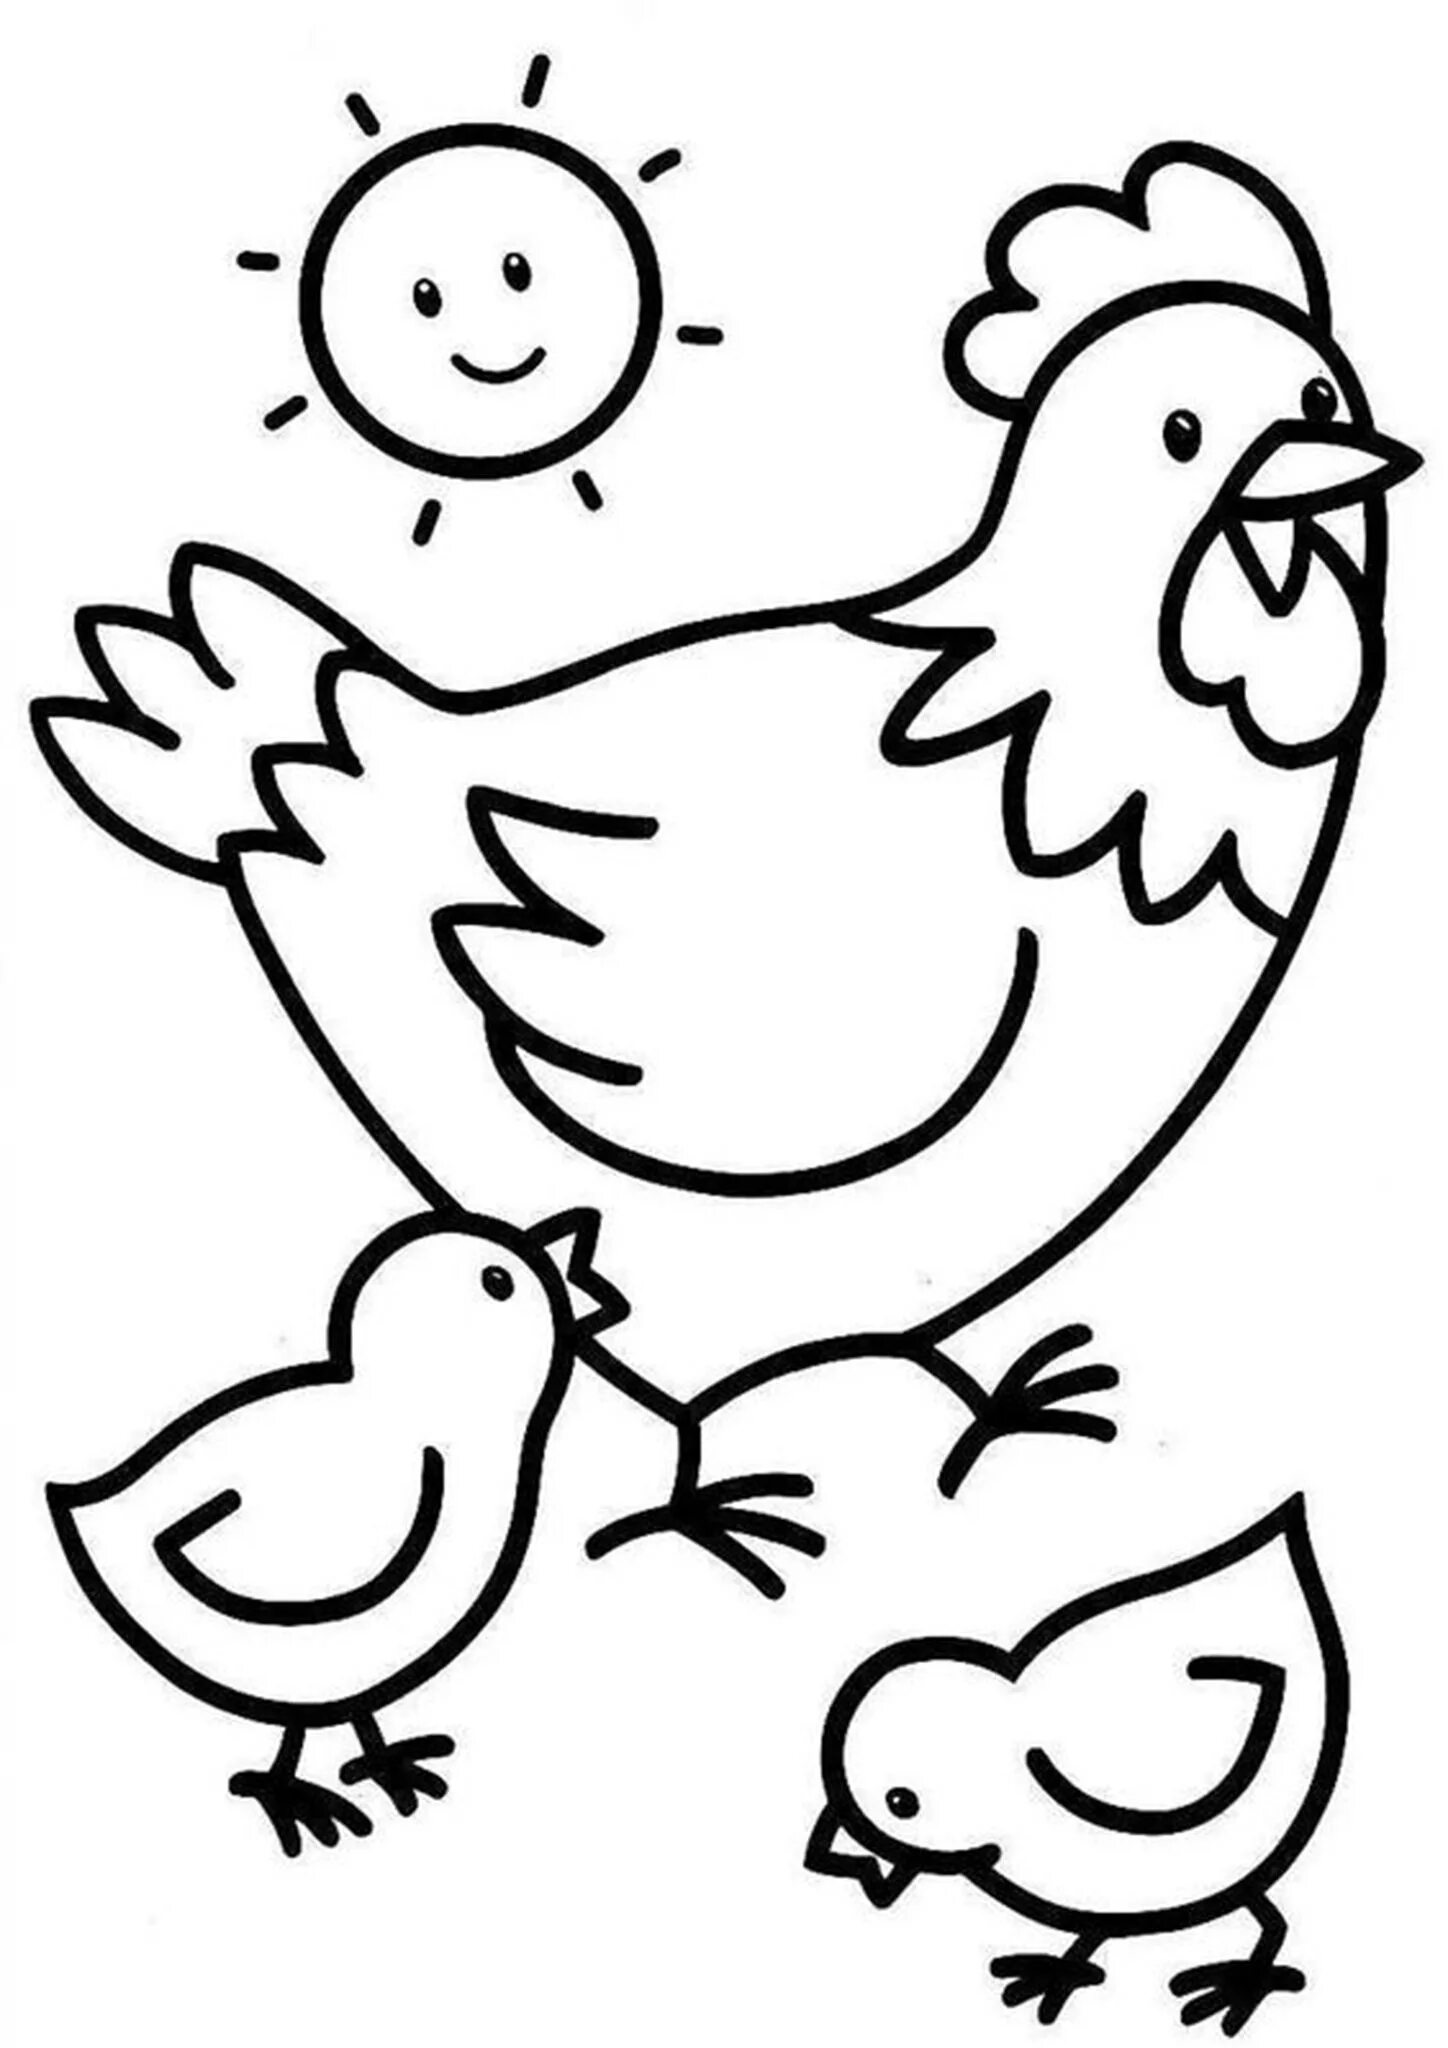 Раскраска 3 цыпленка. Раскраска курица с цыплятами. Курочка с цыплятами раскраска. Раскраска кур ца с цыплкнком. Раскраска Курочка с цыплятами для детей.